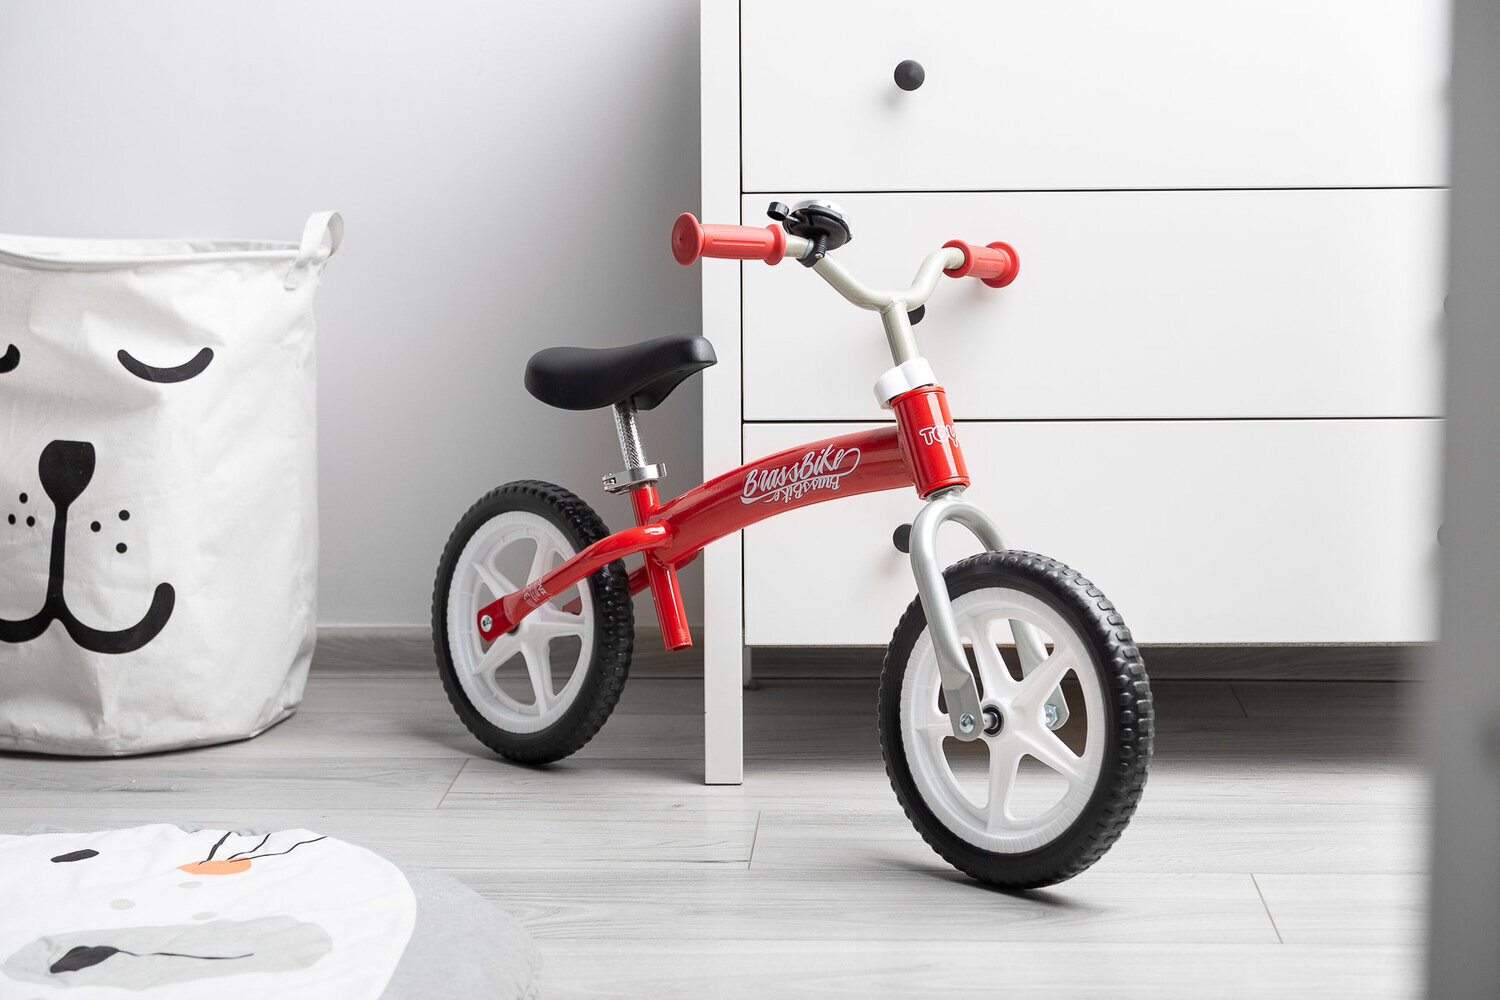 Balansinis dviratukas Toyz Brass, red kaina ir informacija | Balansiniai dviratukai | pigu.lt